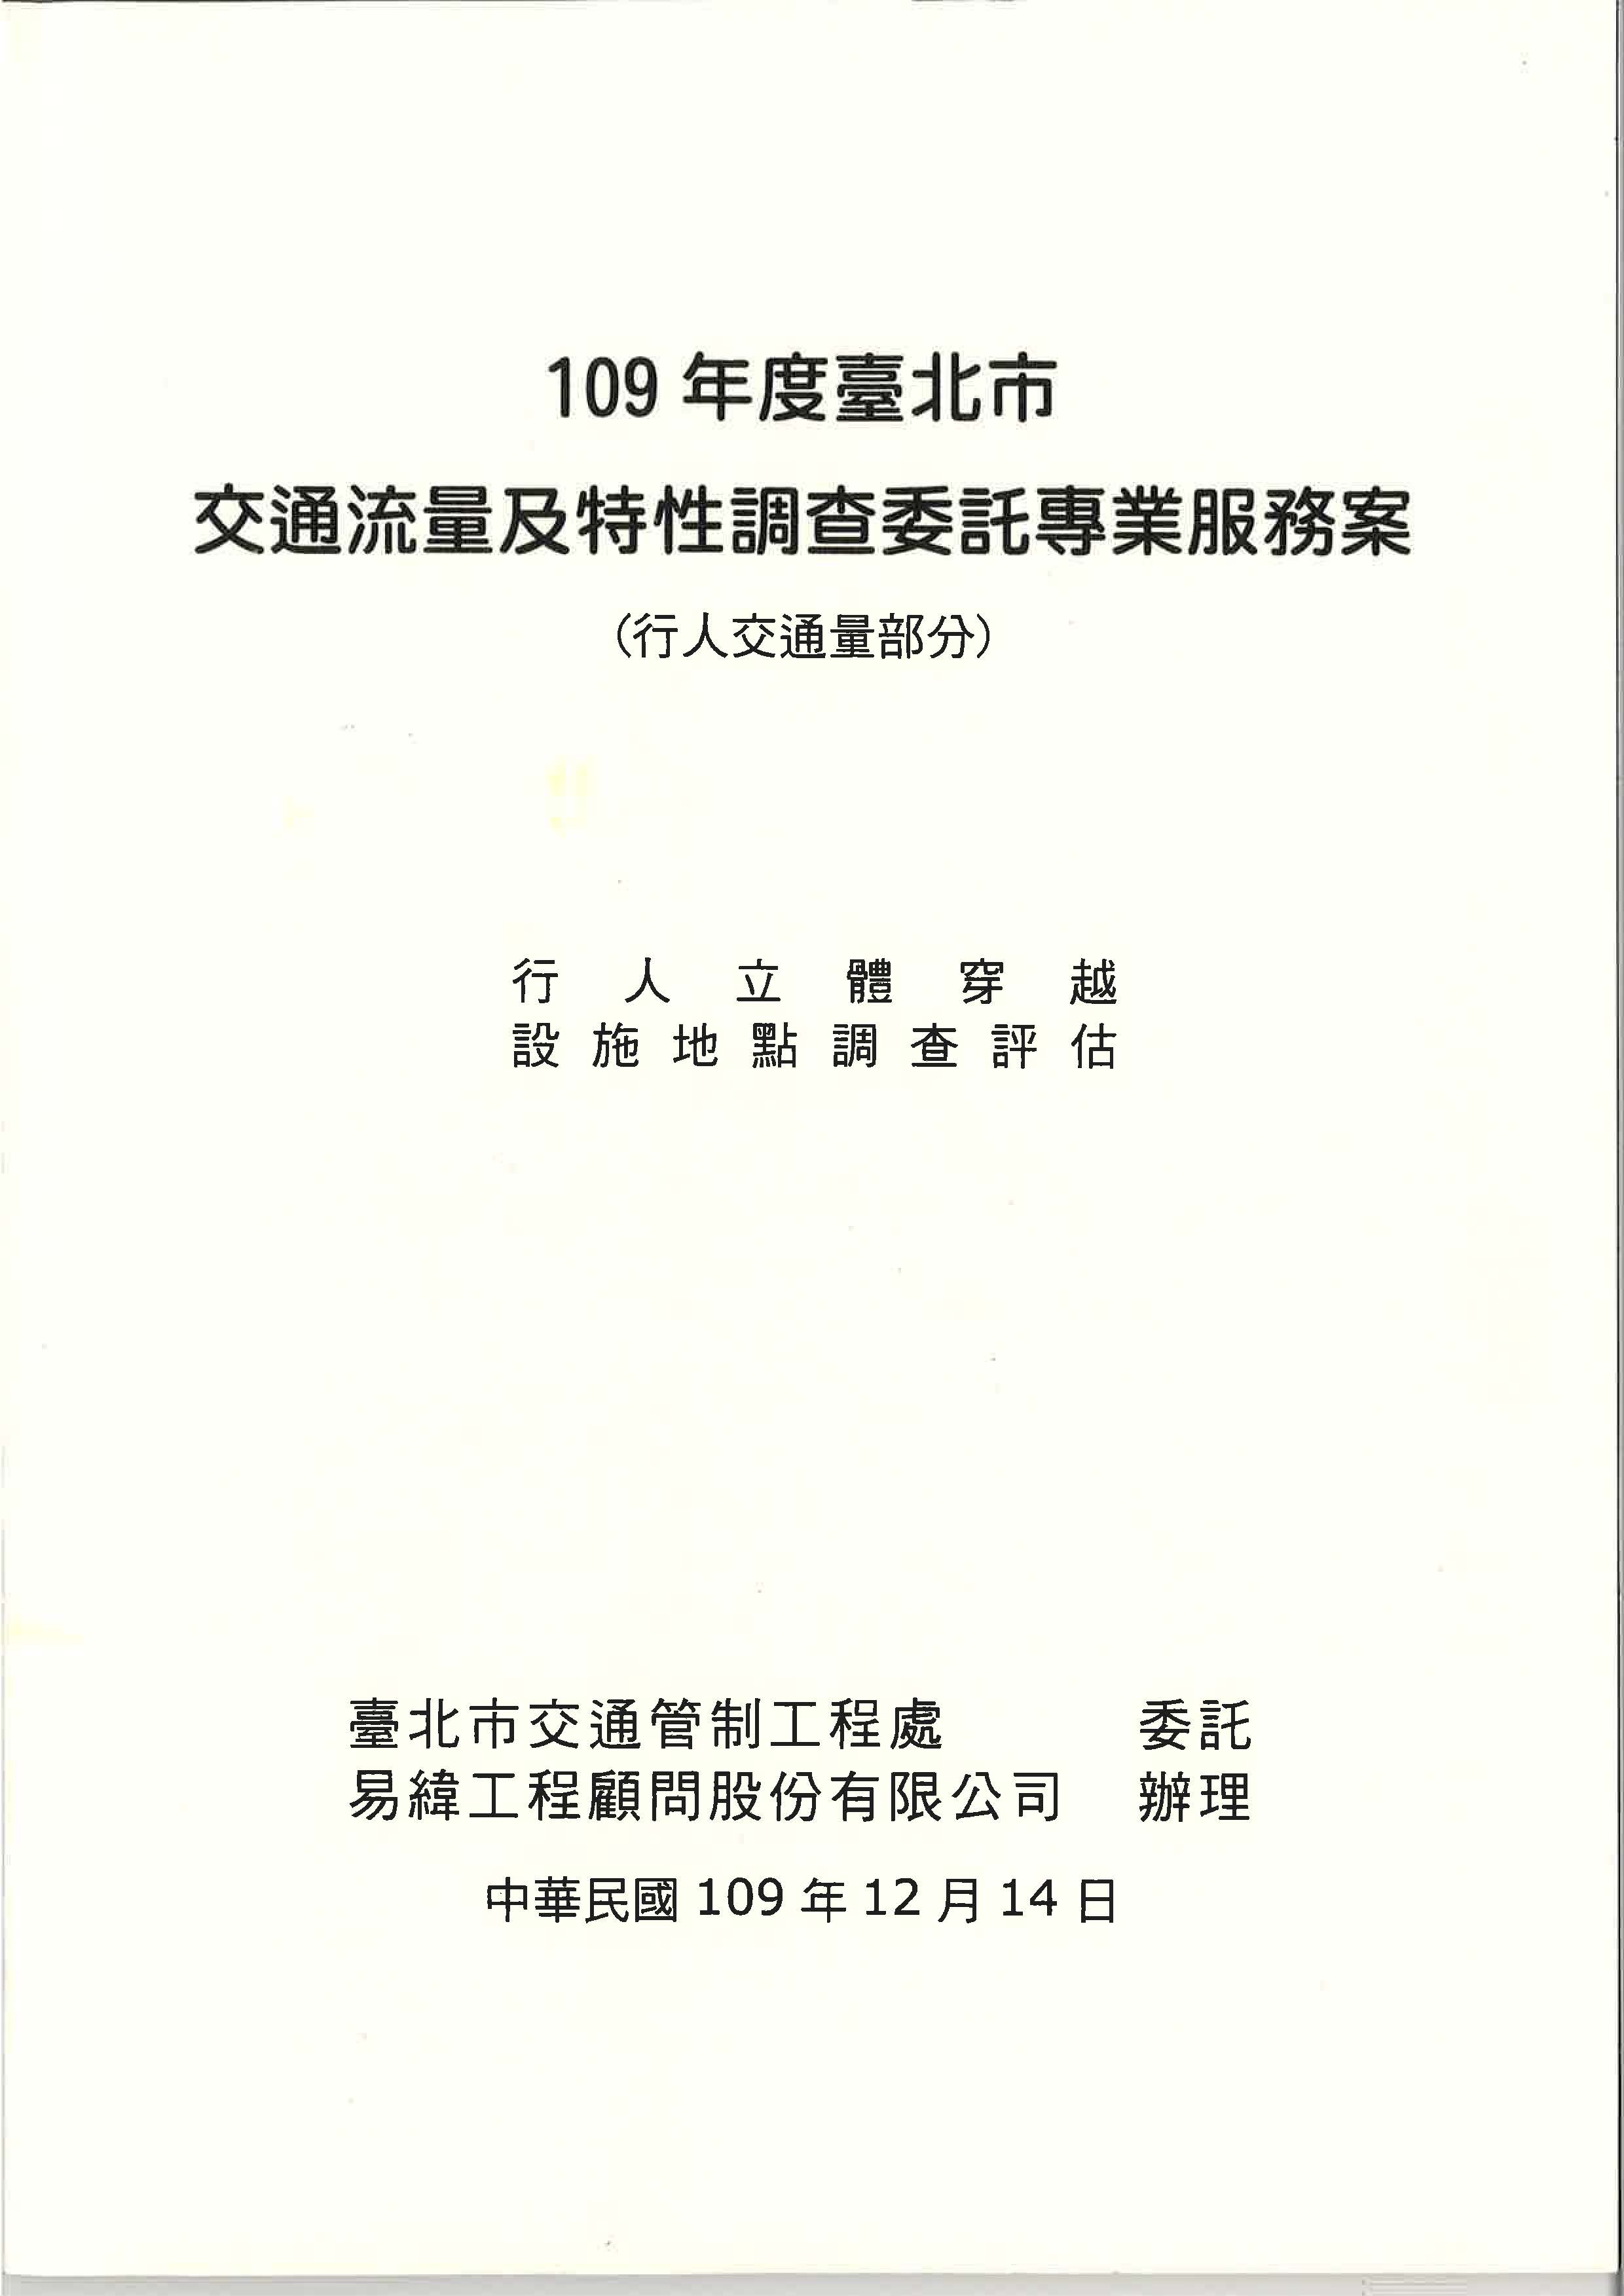 109年度臺北市交通流量及特性調查委託專業服務案(行人交通量部分) 